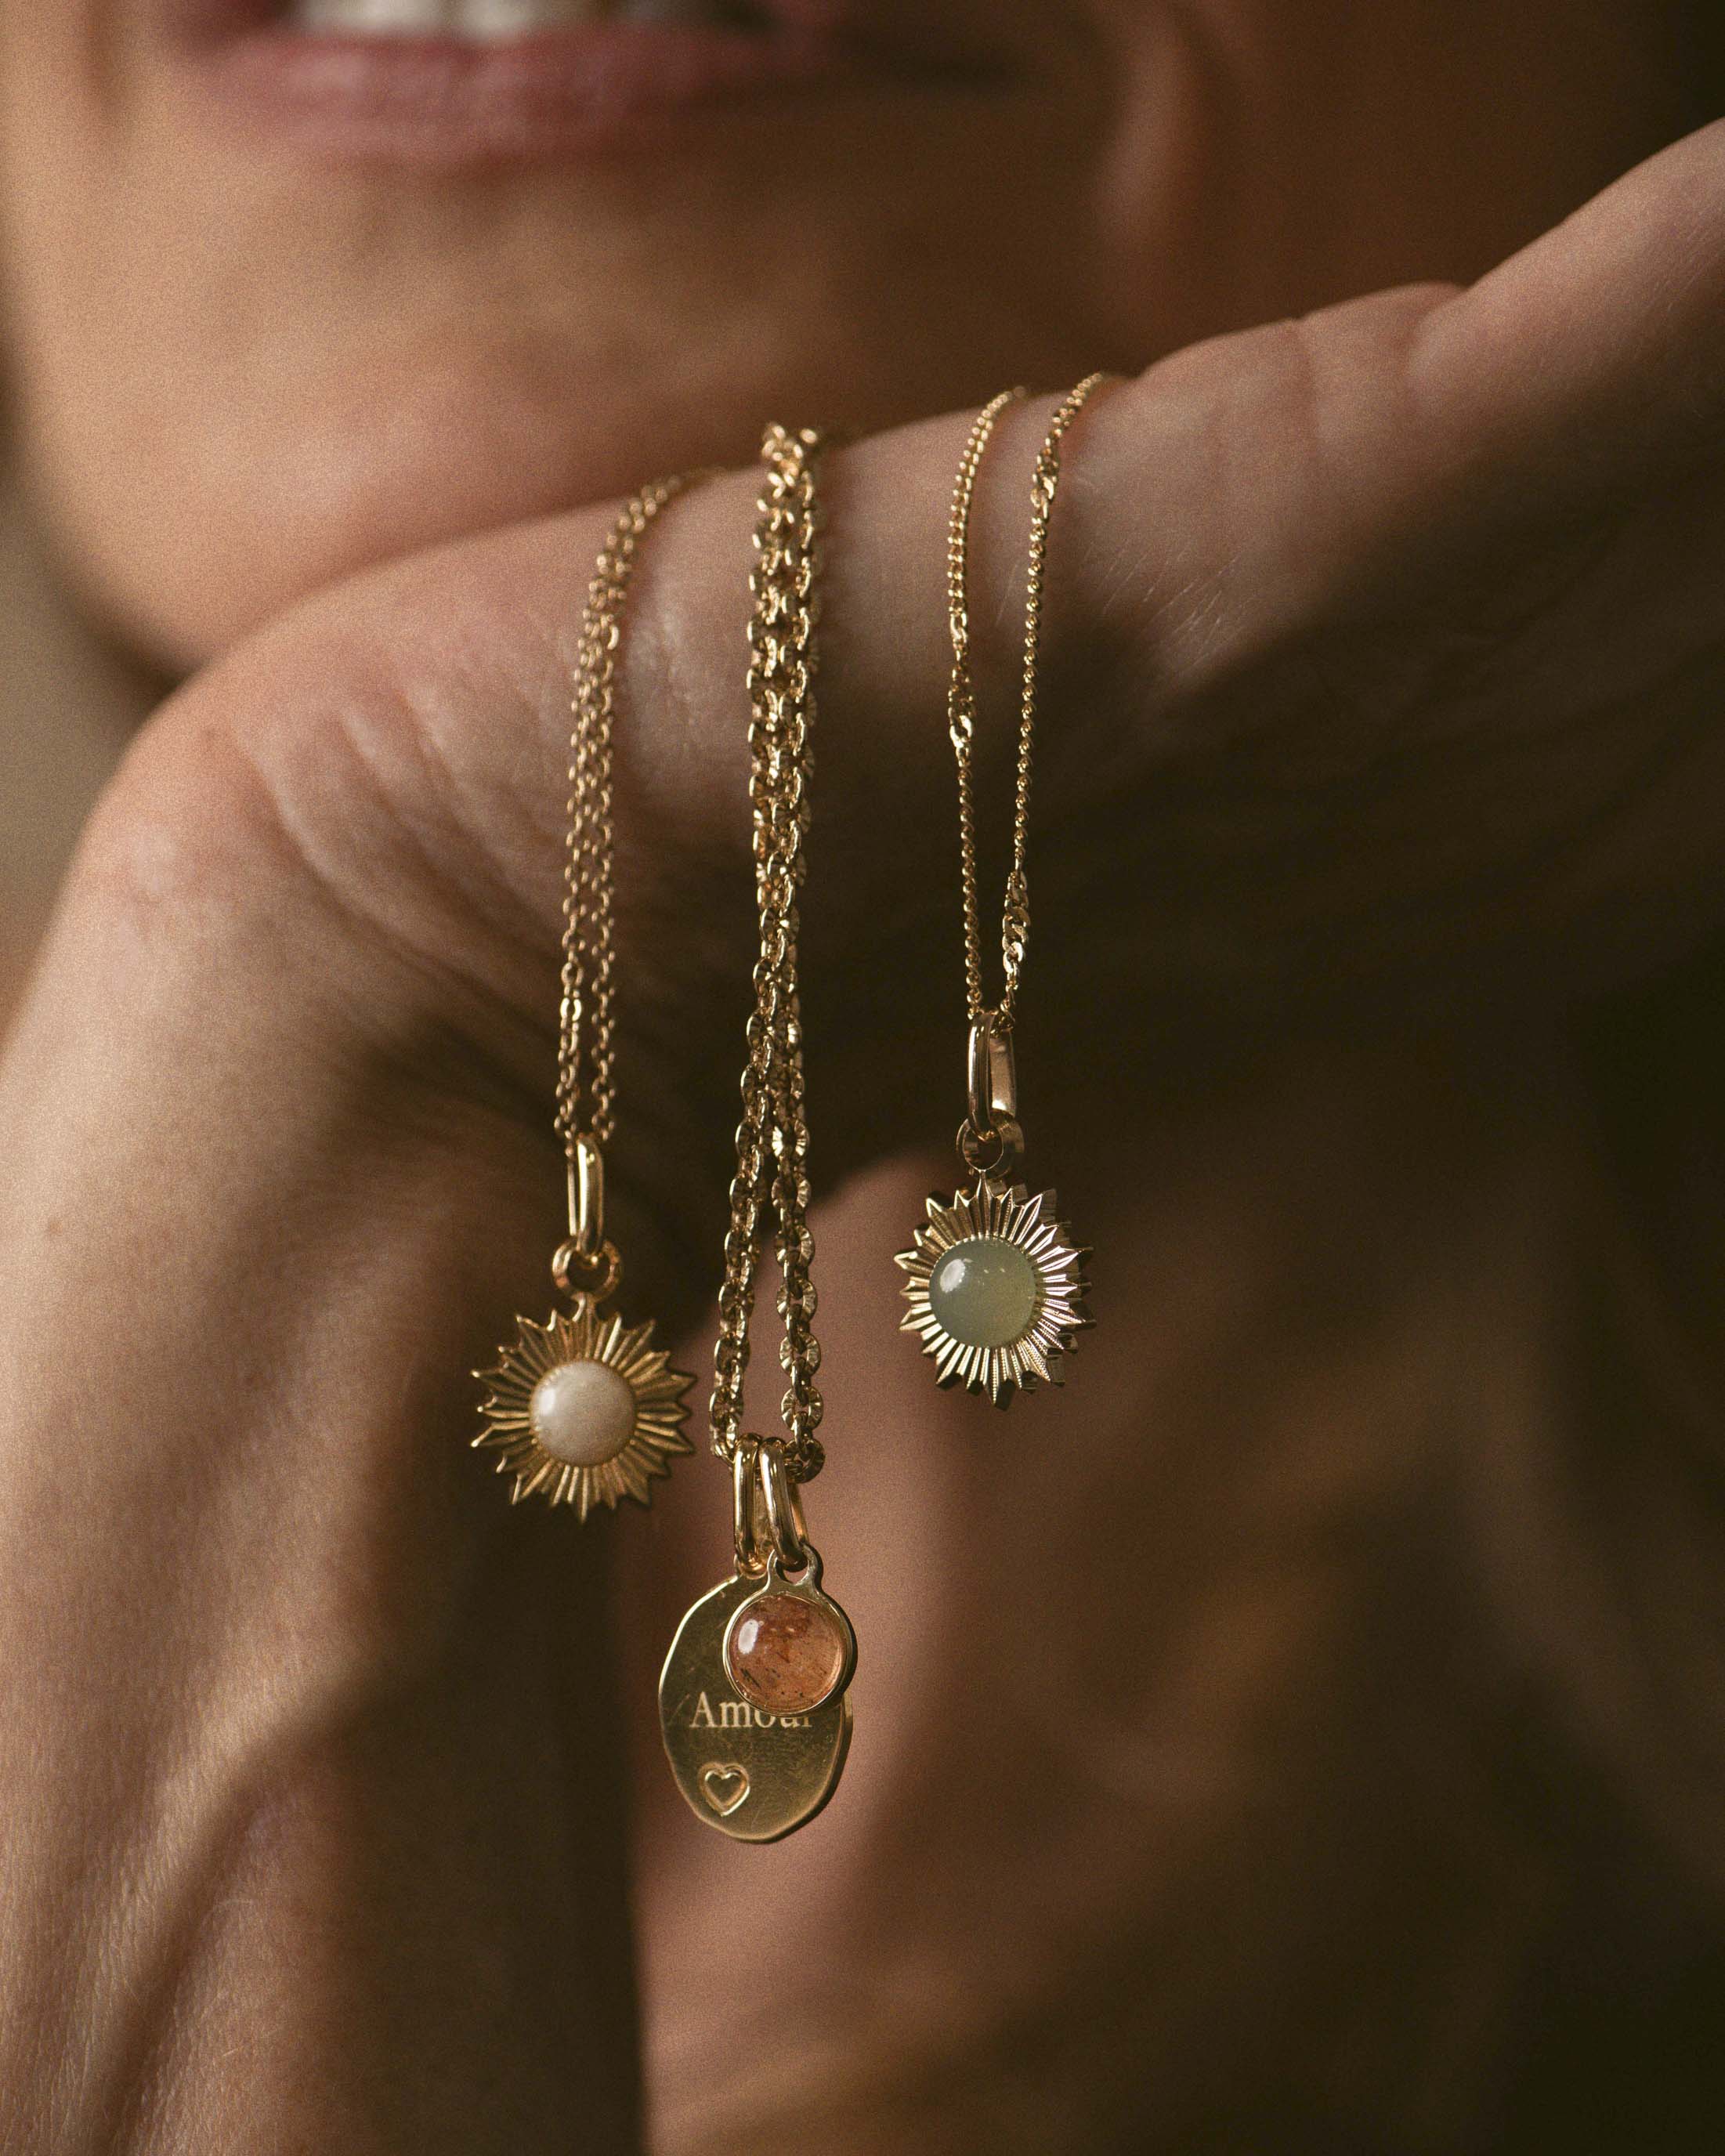 Association de colliers en plaqué or 18 carats, composée d'un collier en maille soleil avec une médaille ovale gravable au motif cœur associée à une pampille, et de deux autres colliers avec un pendentif soleil orné d'une pierre naturelle, fabriqués en France.